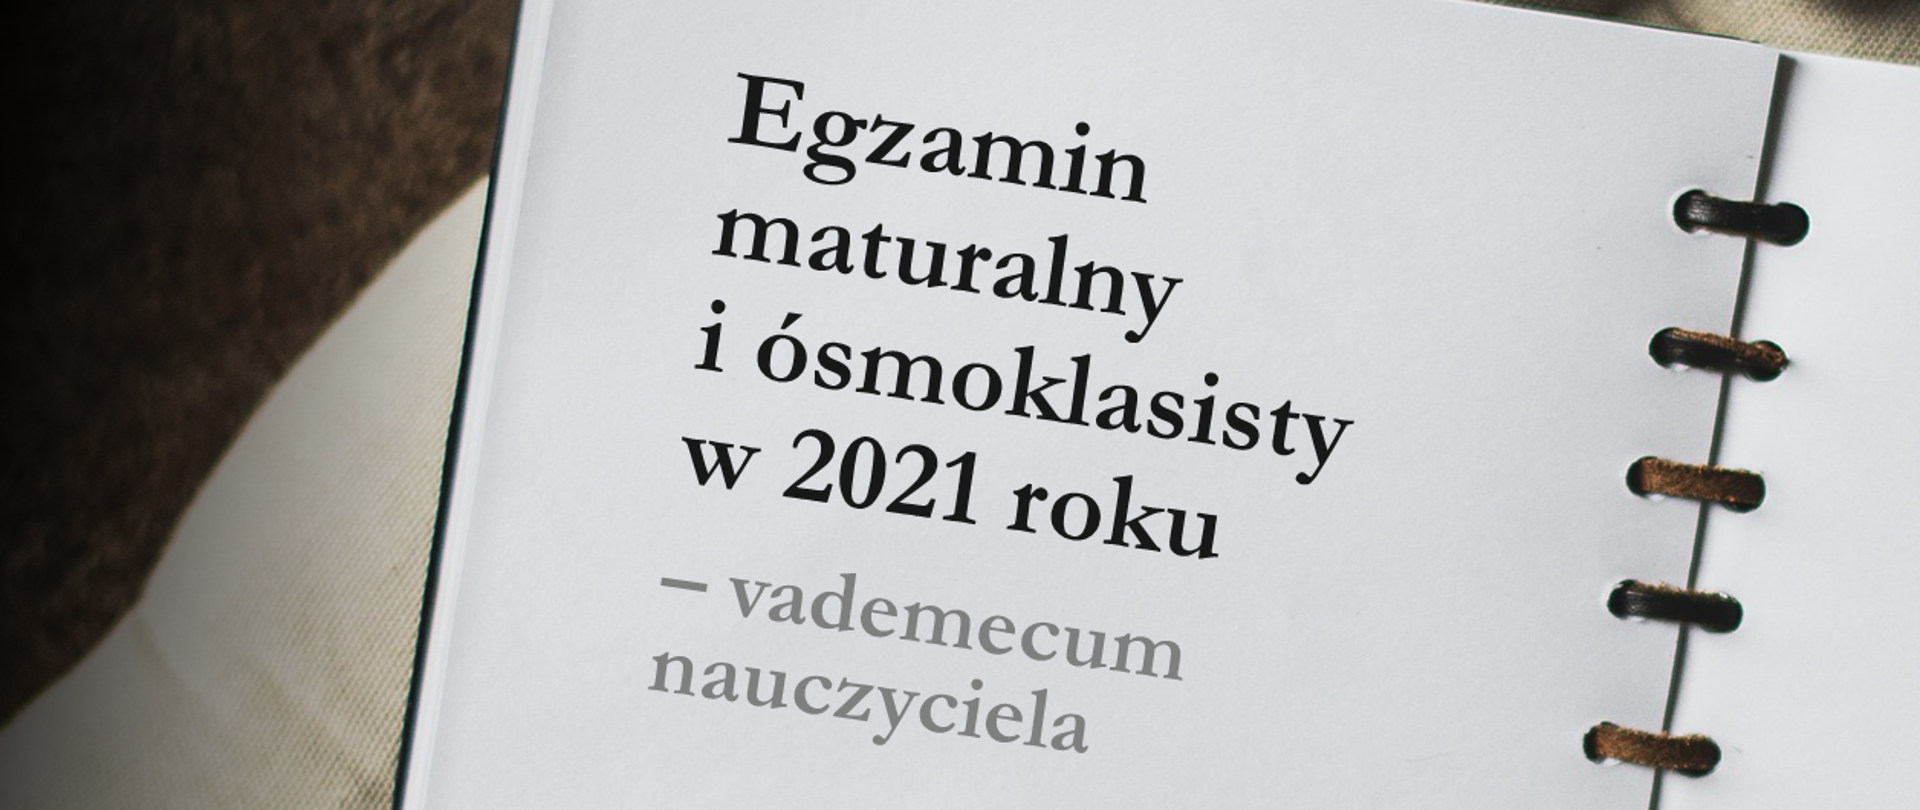 Otwarty notes z tekstem: "Egzamin maturalny i ósmoklasisty w 2021 roku – vademecum nauczyciela".